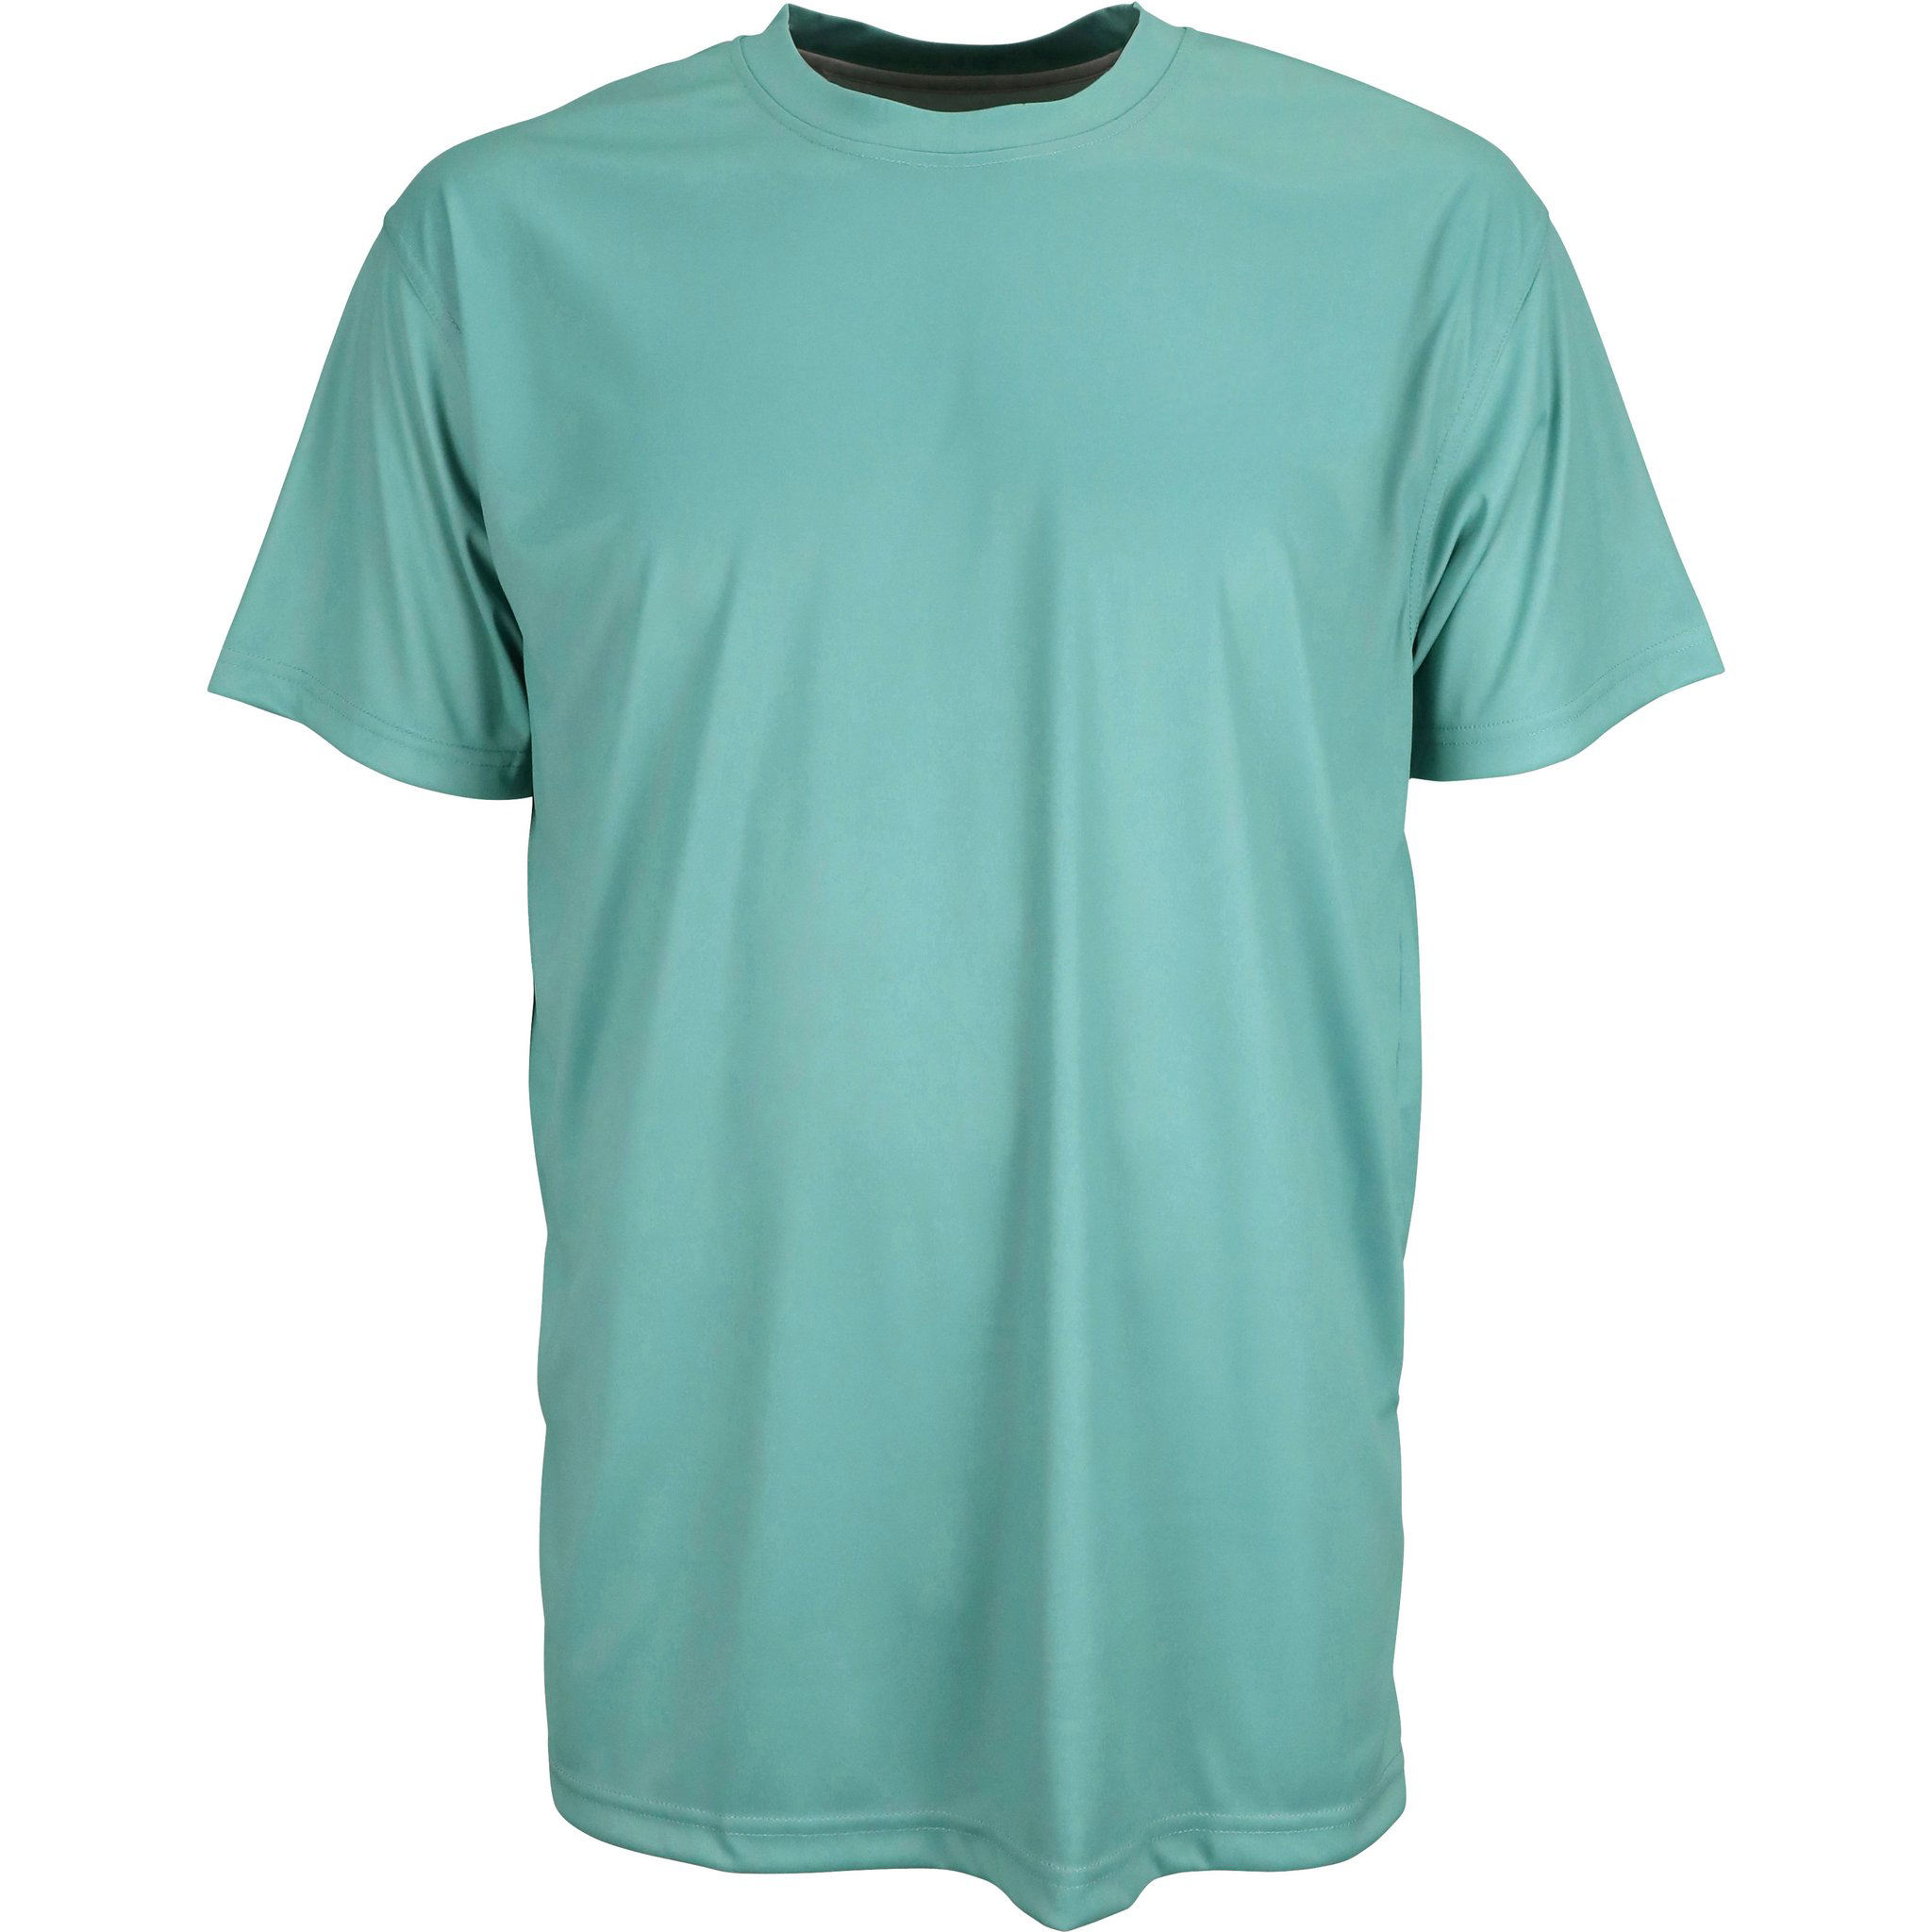 Logotipo personalizado do fabricante OEM 100% poliéster proteção solar homens de secagem rápida camiseta de pesca